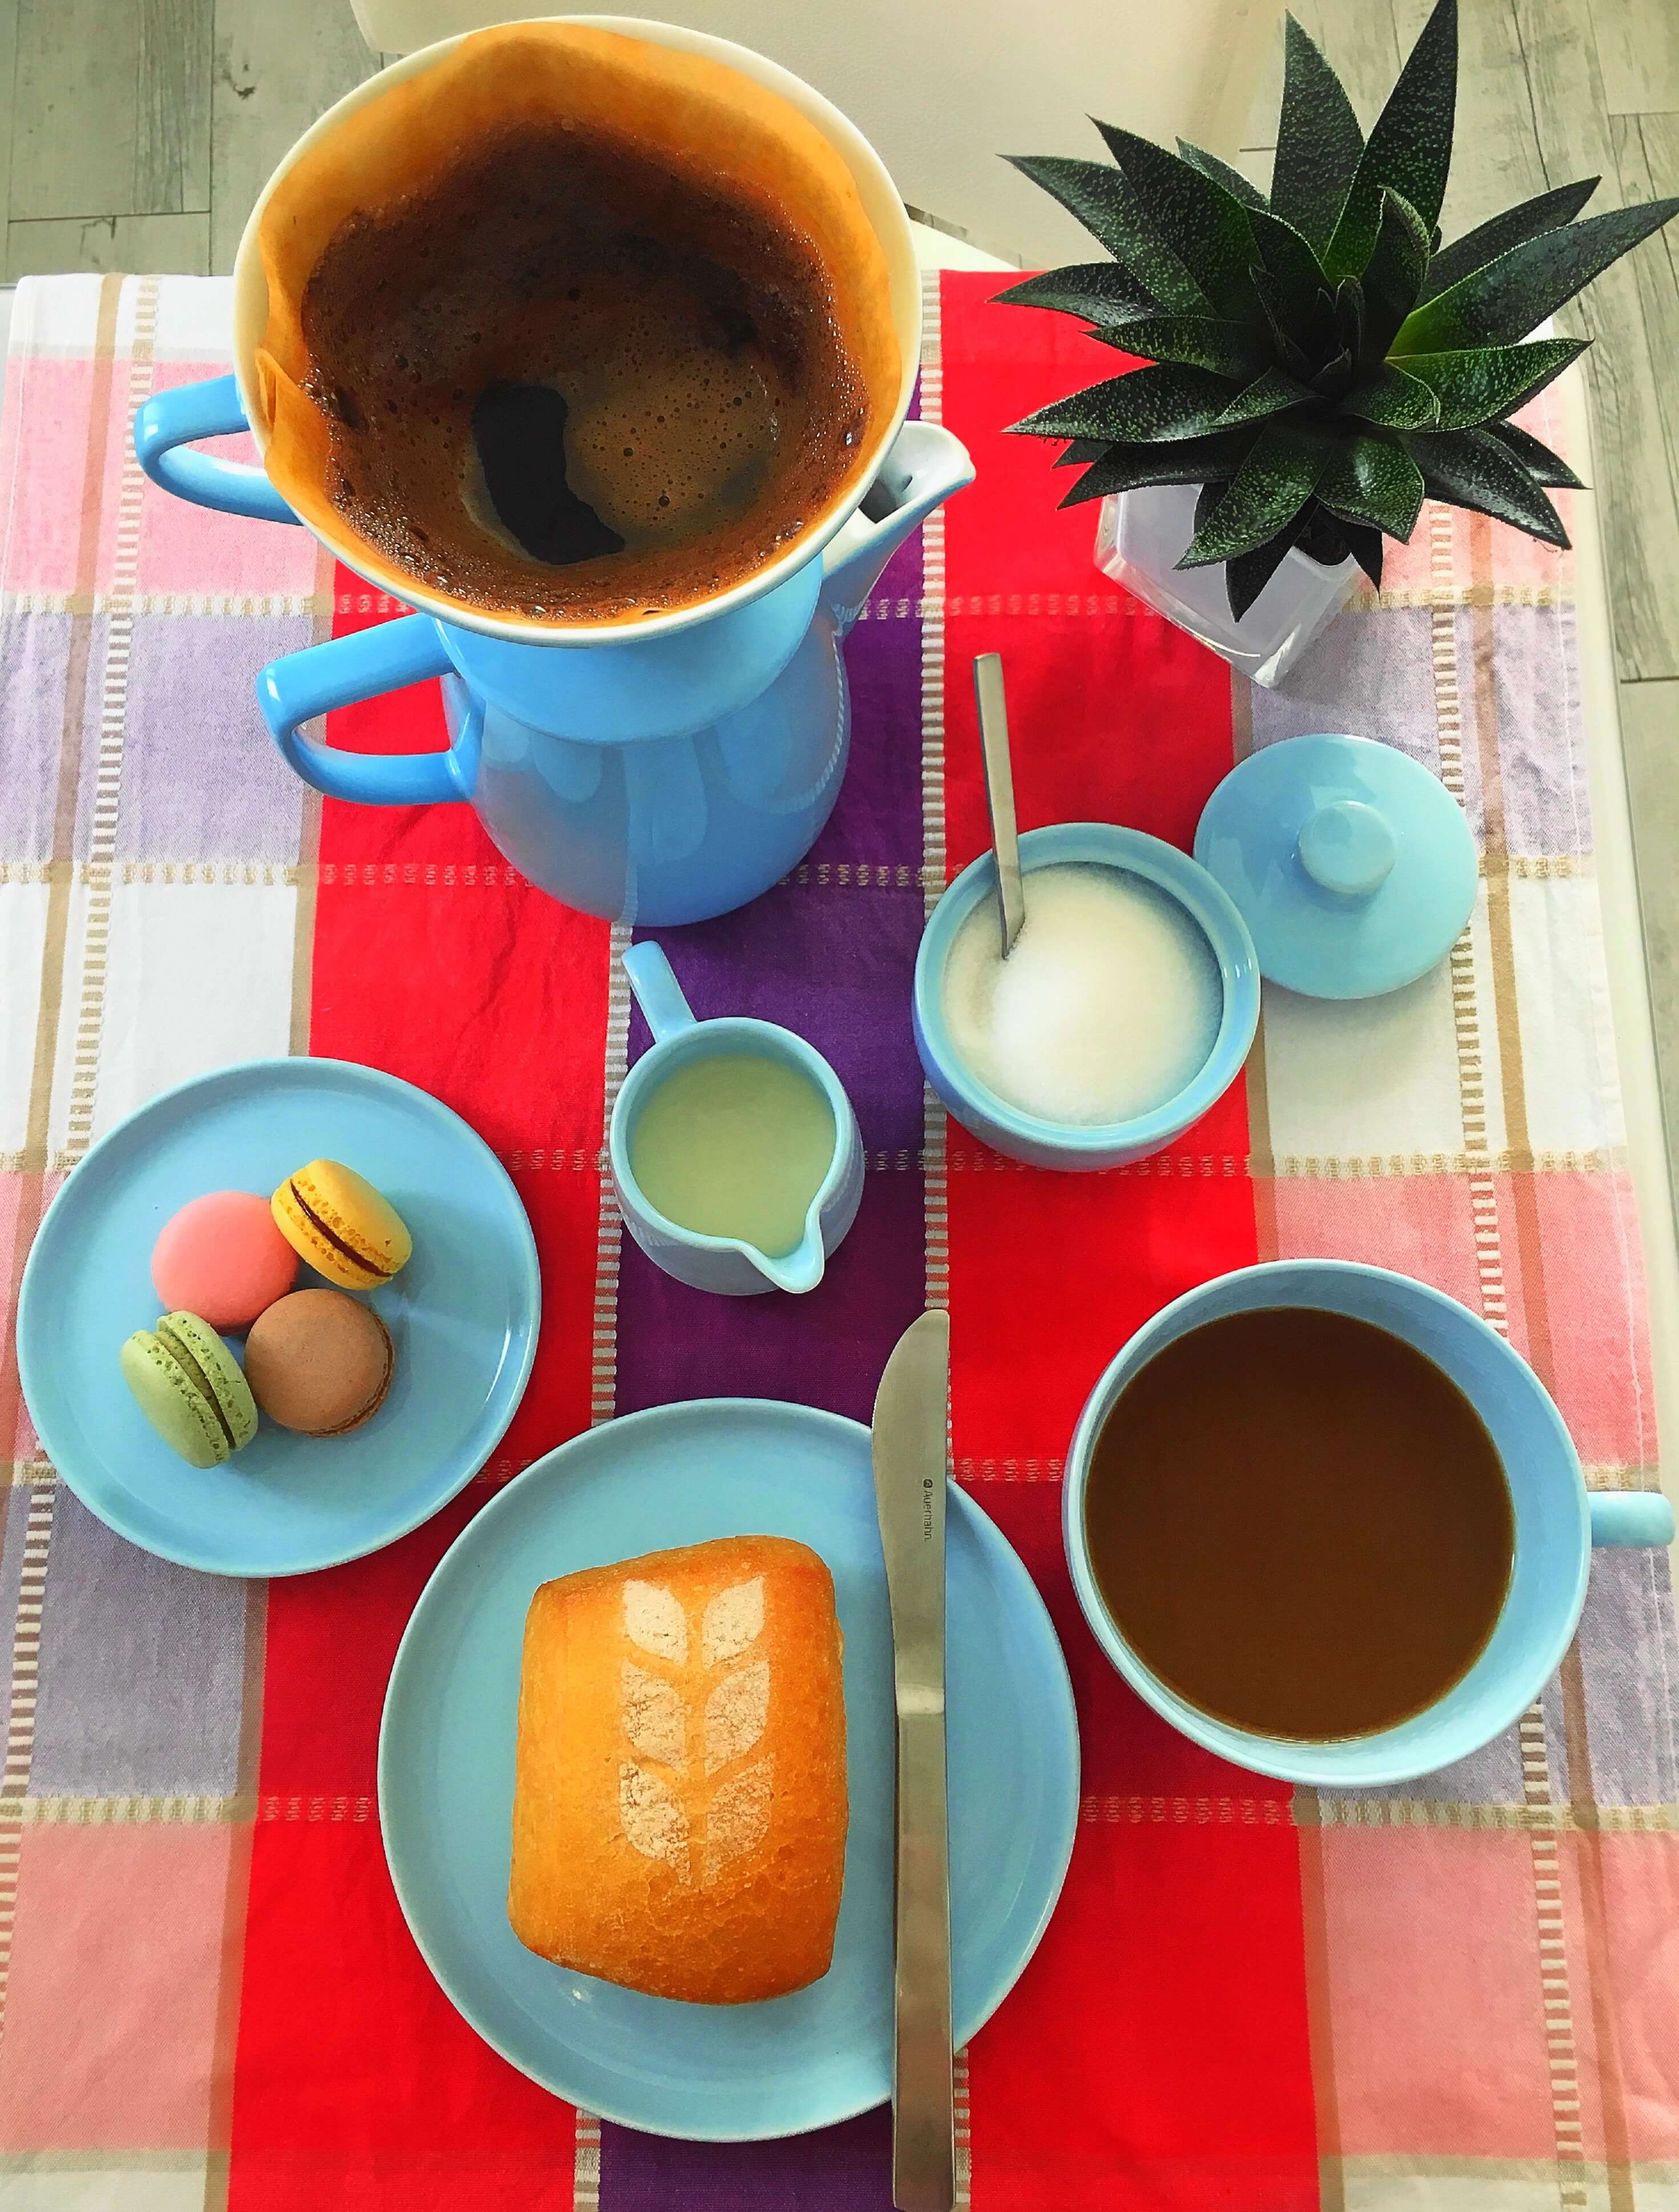 Heute zeige ich euch das stylische Melitta-Filter von Friesland Porzellan, erzähle die Geschichte des Kaffeefilters und gebe Tipps für`s perfekte Pour-Over